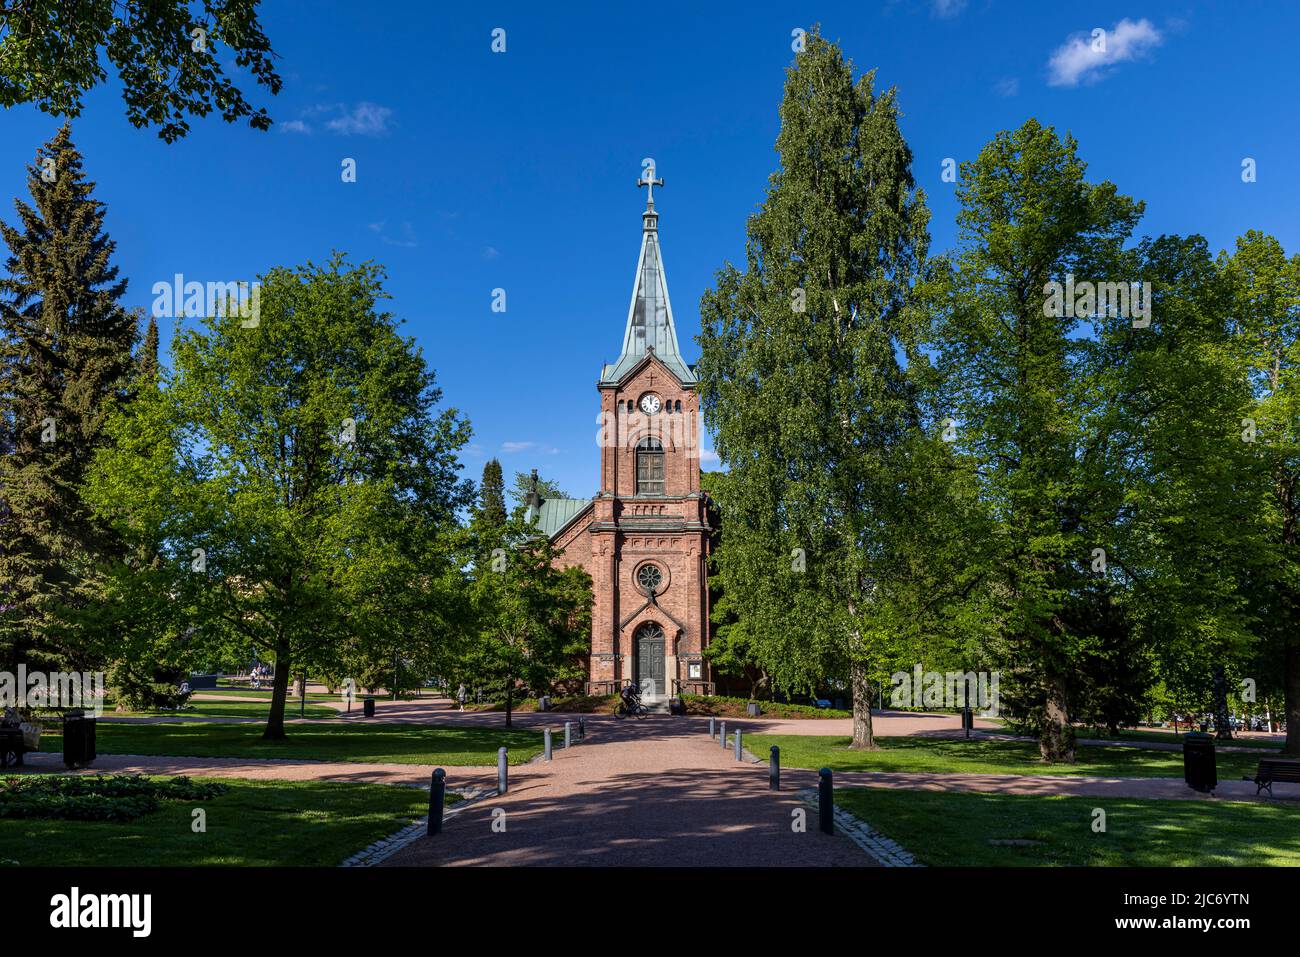 Church of Jyväskylä on a bright summer day Stock Photo